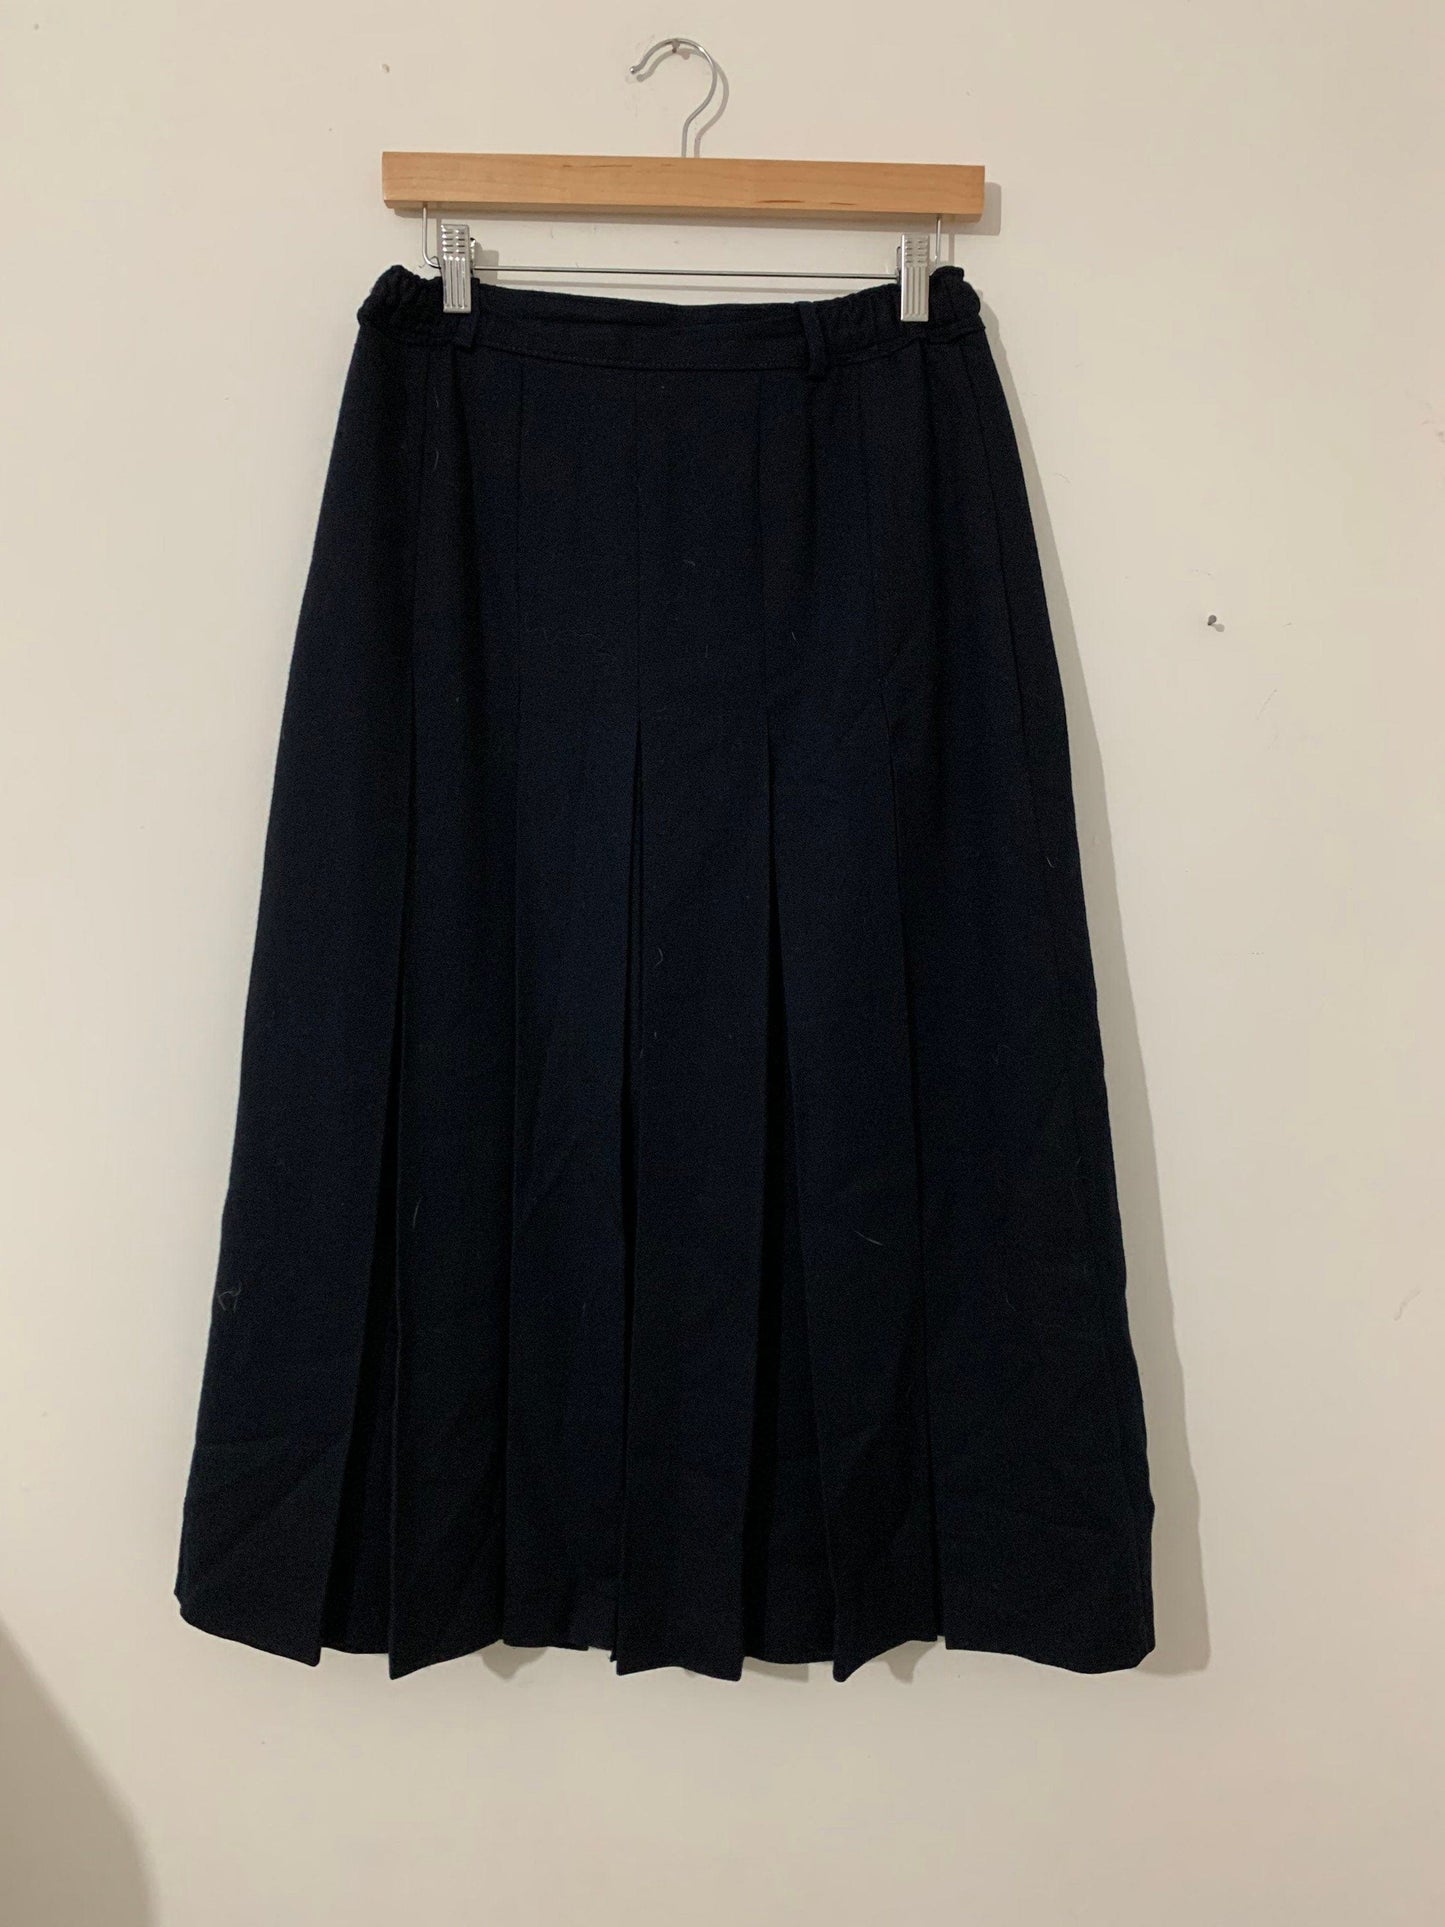 Vintage Navy Blue Pencil Skirt Knee Length  UK Size 12 - Straven